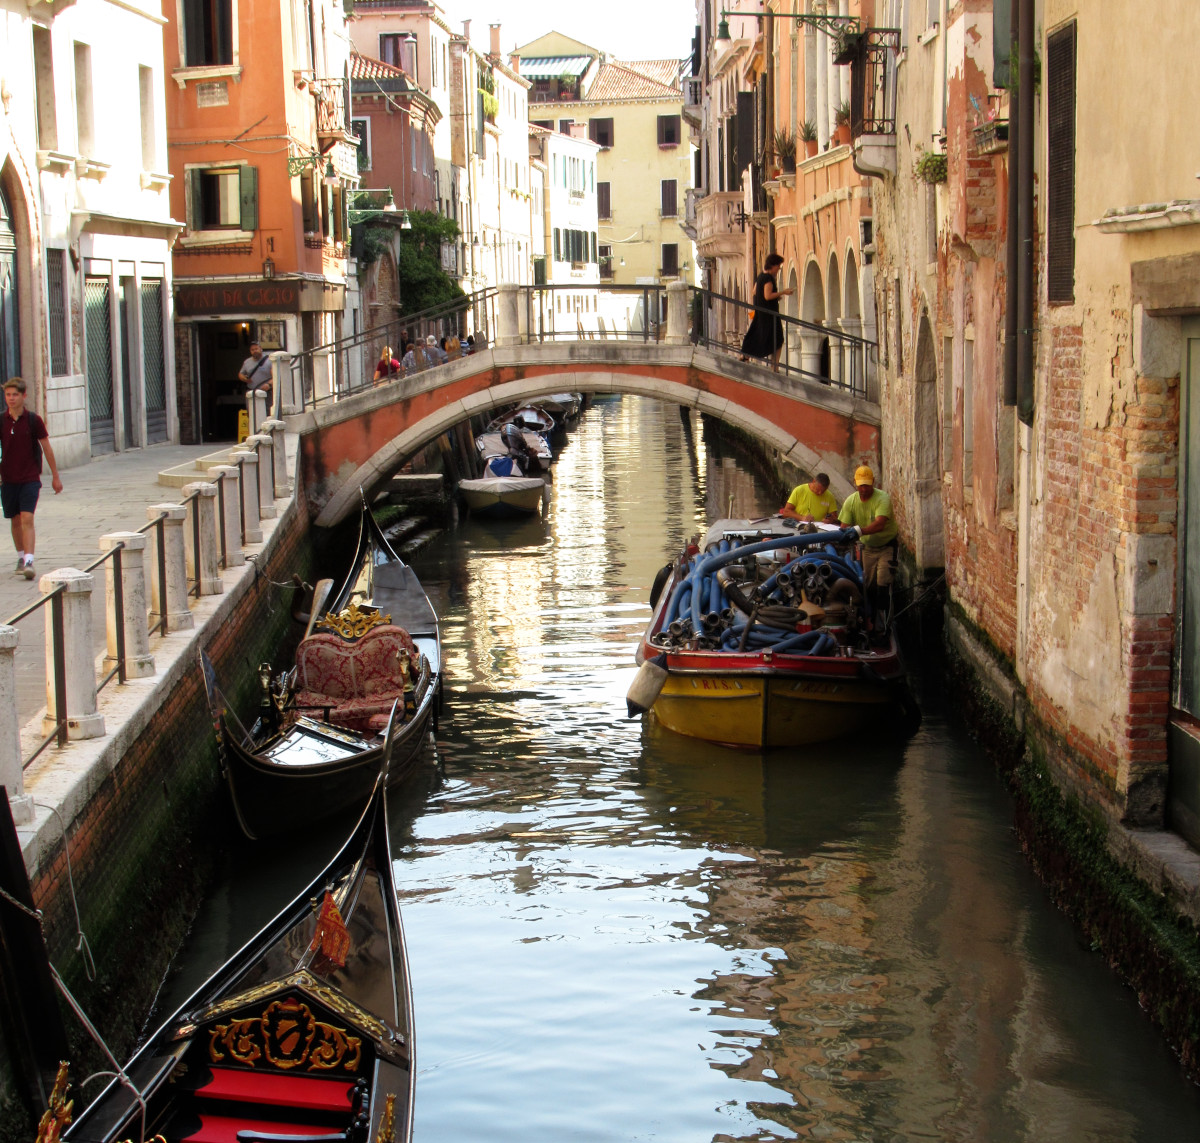 Ein Kanal in Venedig, linker Hand zwei historische Gondeln, rechts ein modernes Boot mit Baumaterial, im Hintergrund eine Brücke.